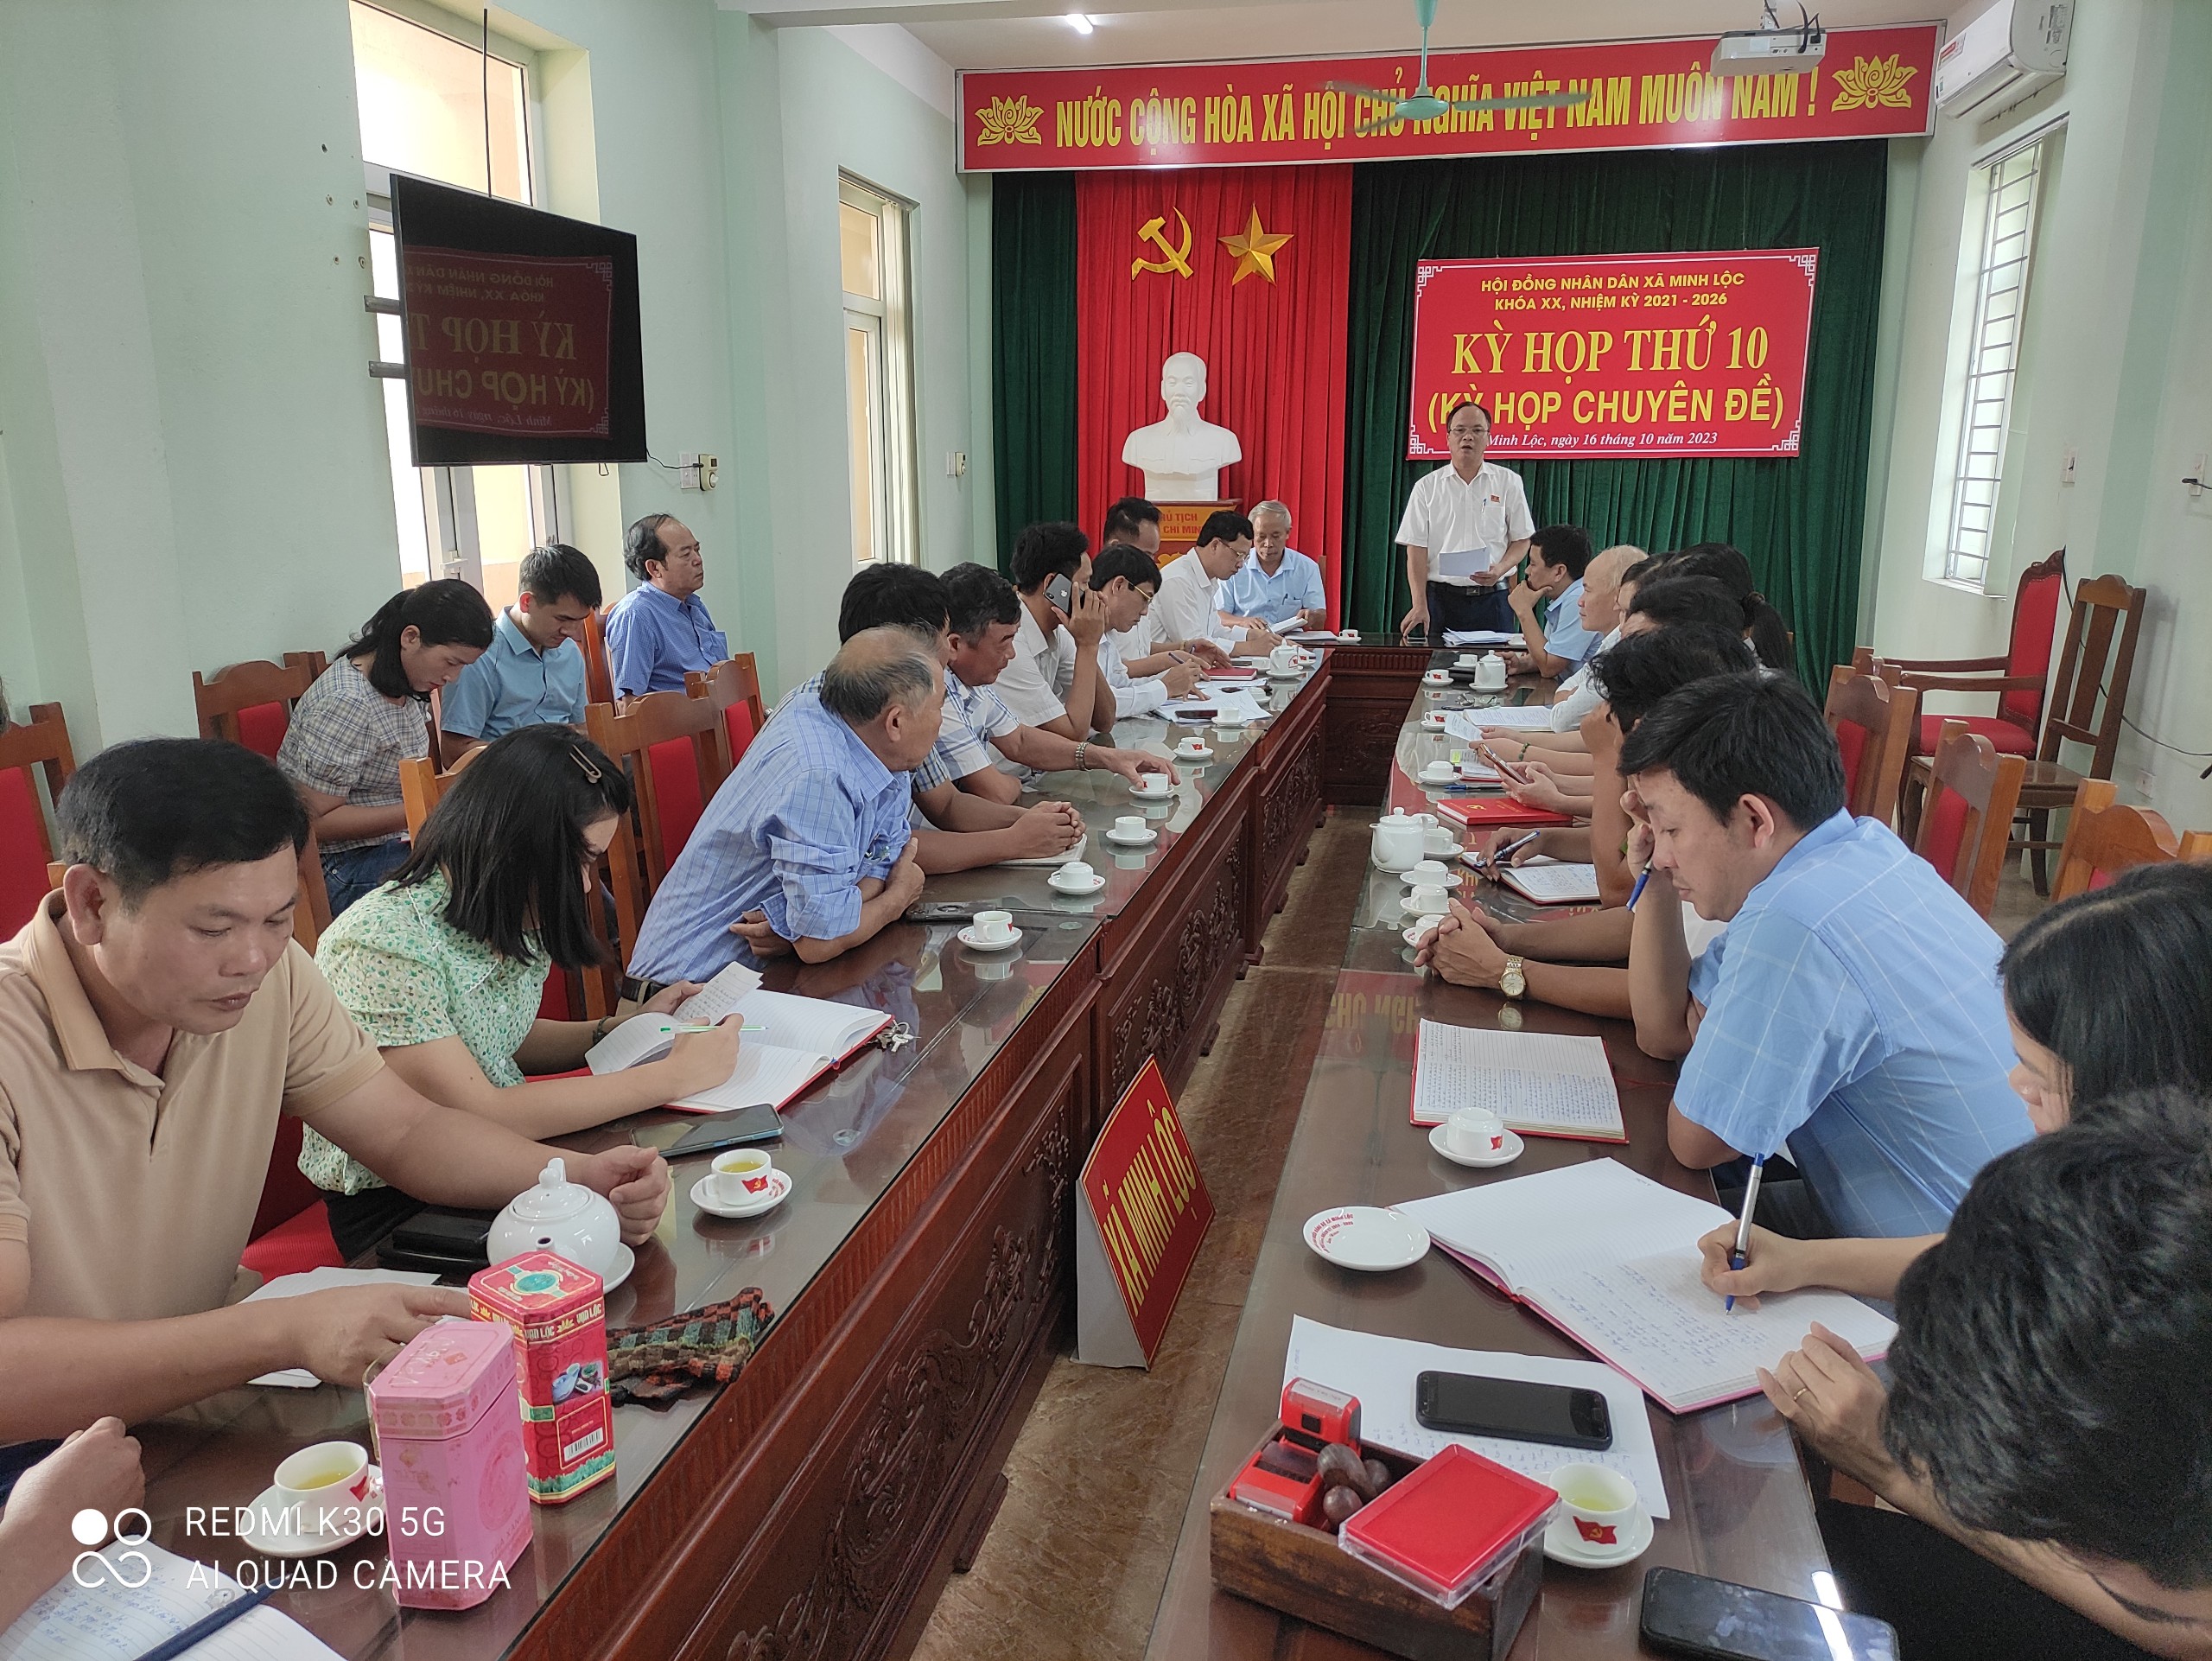 Hội đồng nhân dân xã Minh Lộc khóa XX. Tổ chức kỳ họp thứ 10  (Kỳ họp chuyên đề)